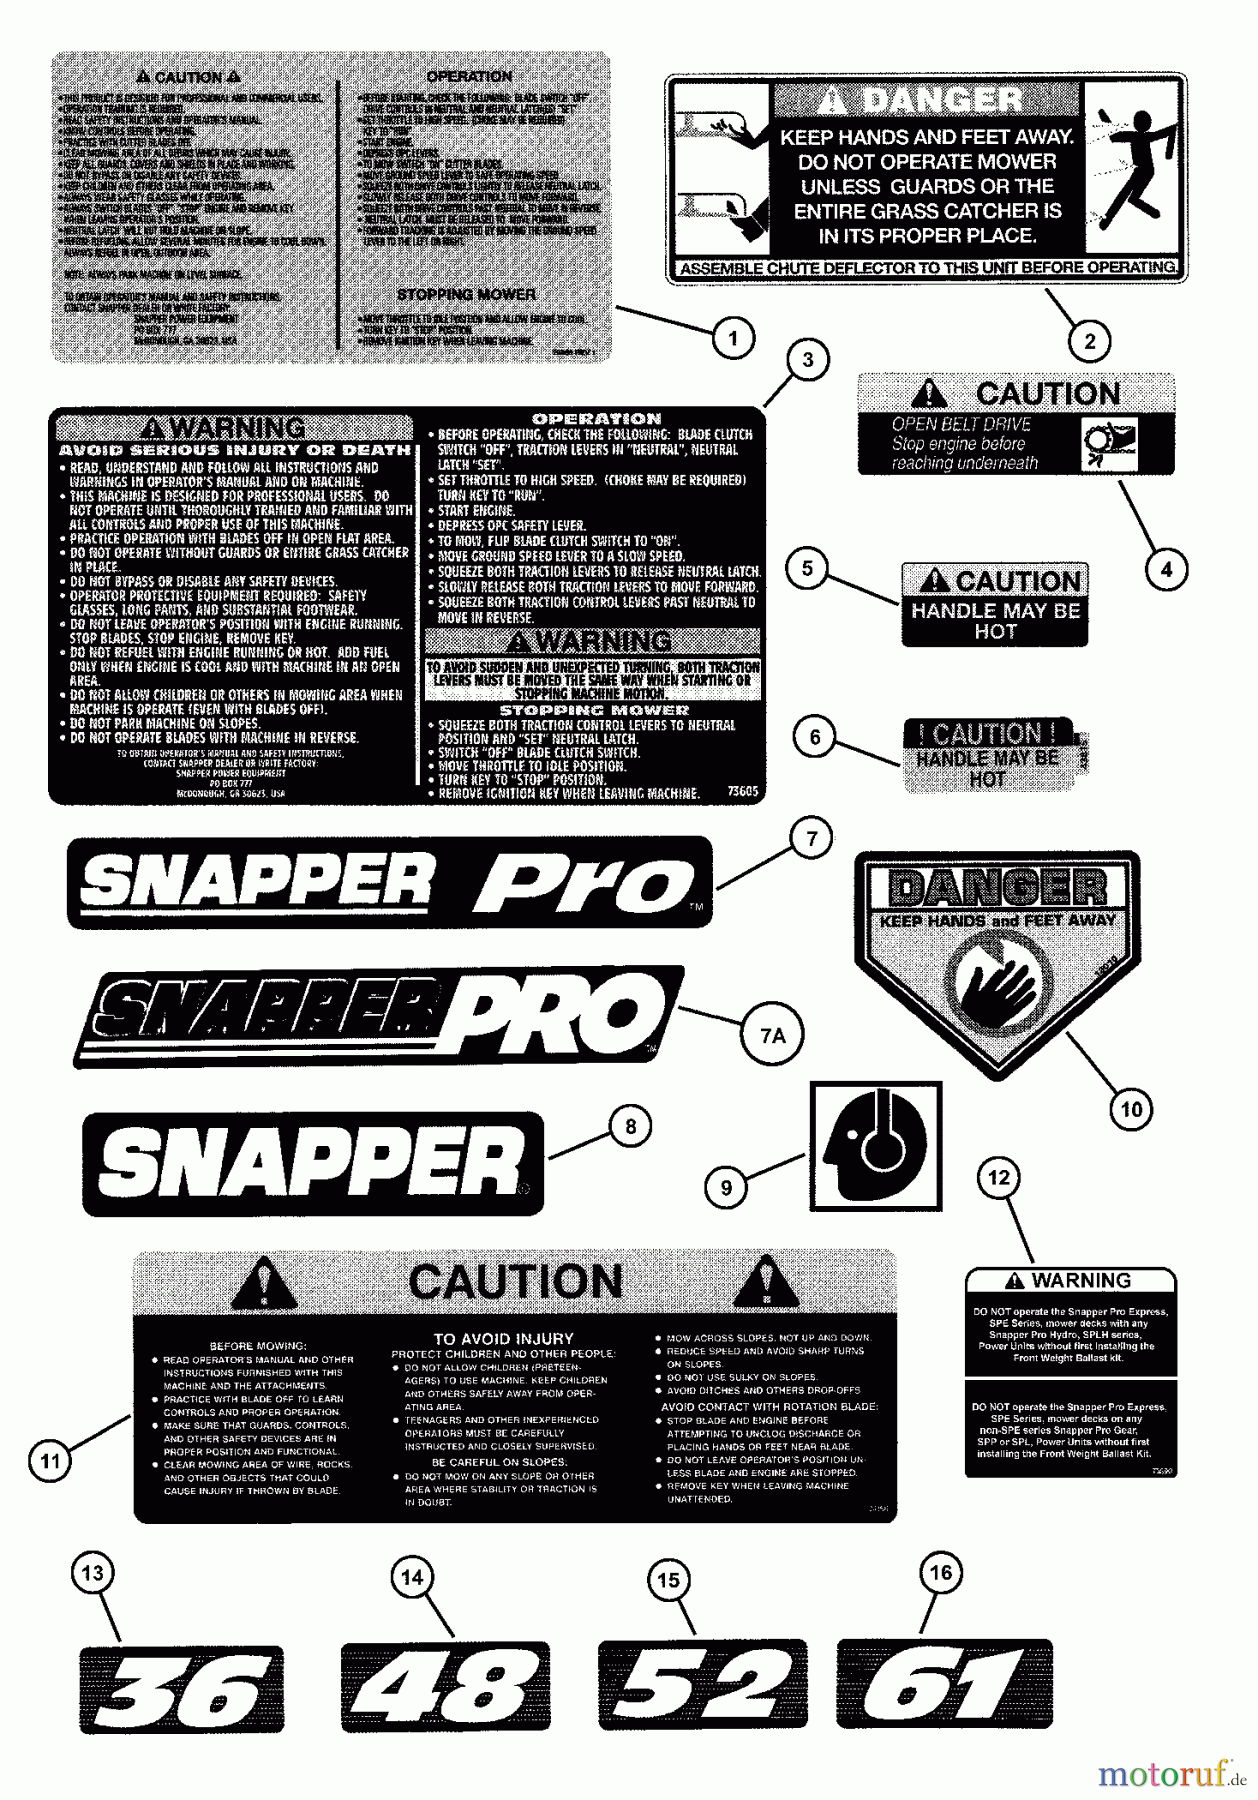  Snapper Mähdecks SP480 - Snapper 48